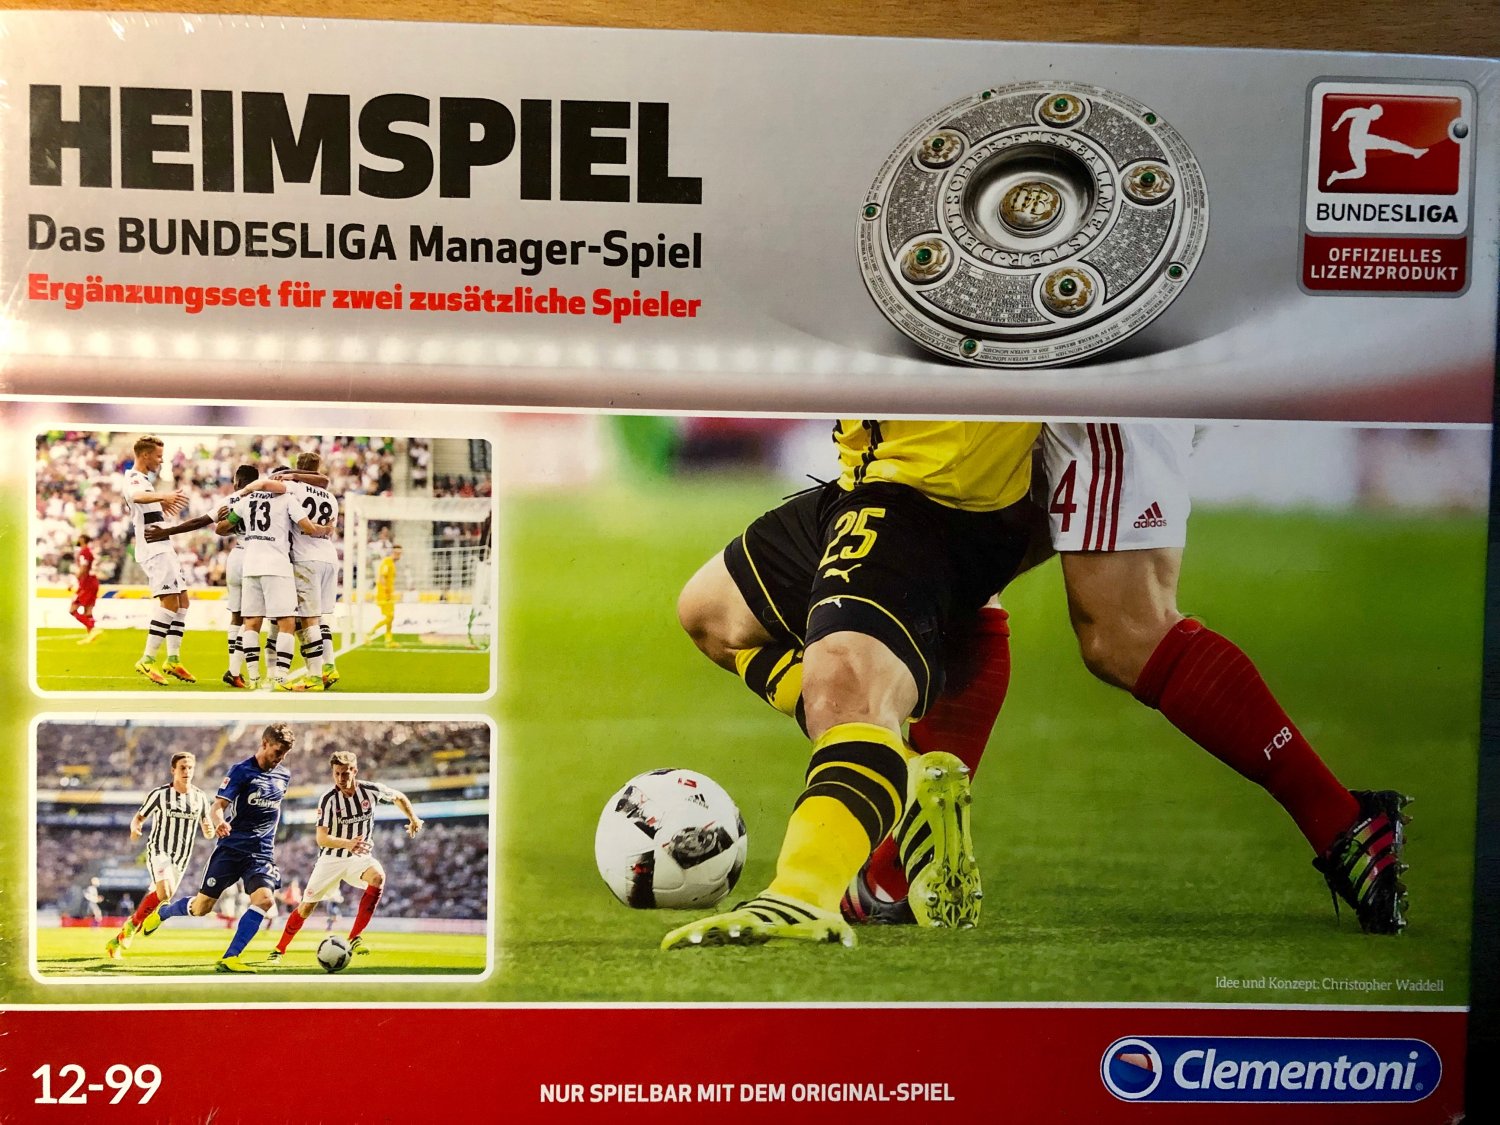 Clementoni Heimspiel Bundesliga Manager Gesellschafts Brett Spiel Fußball Game